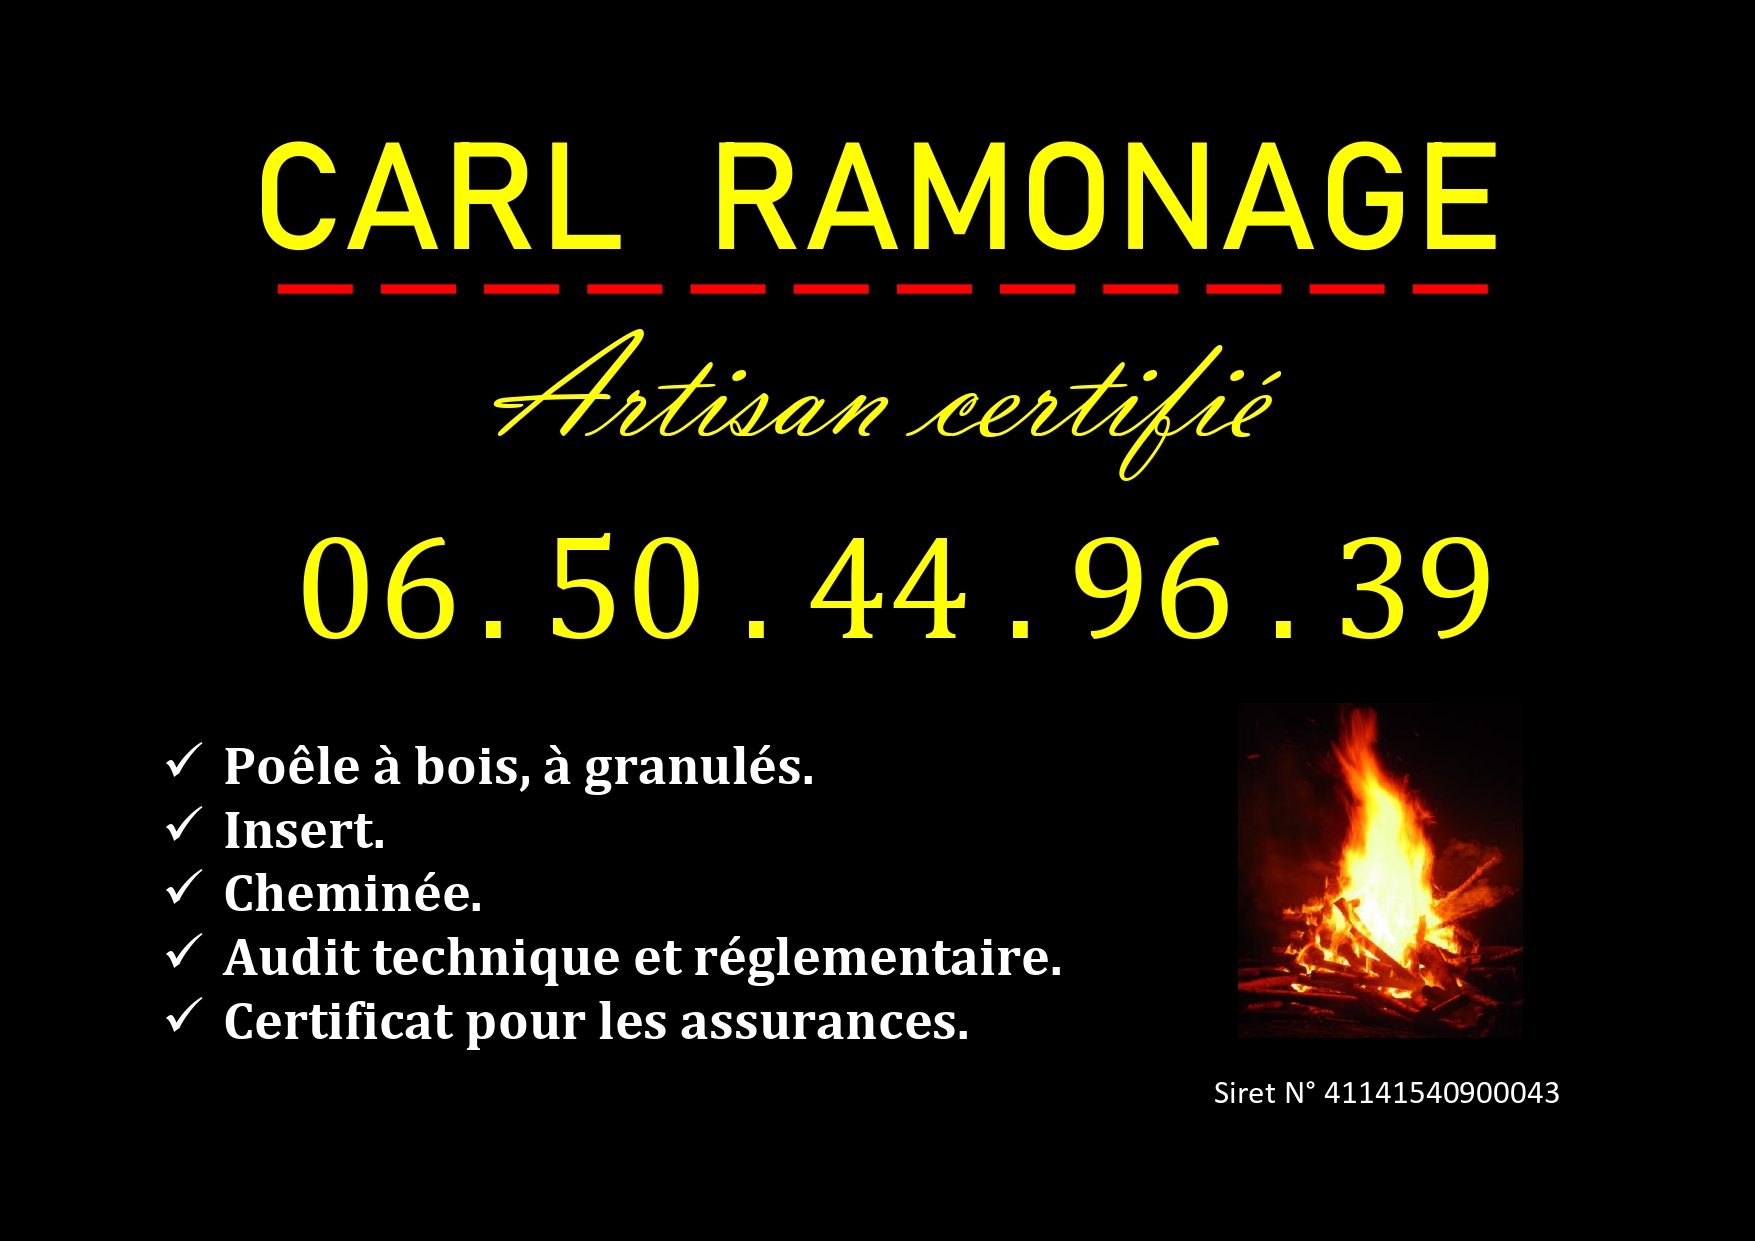 Carl Ramonage